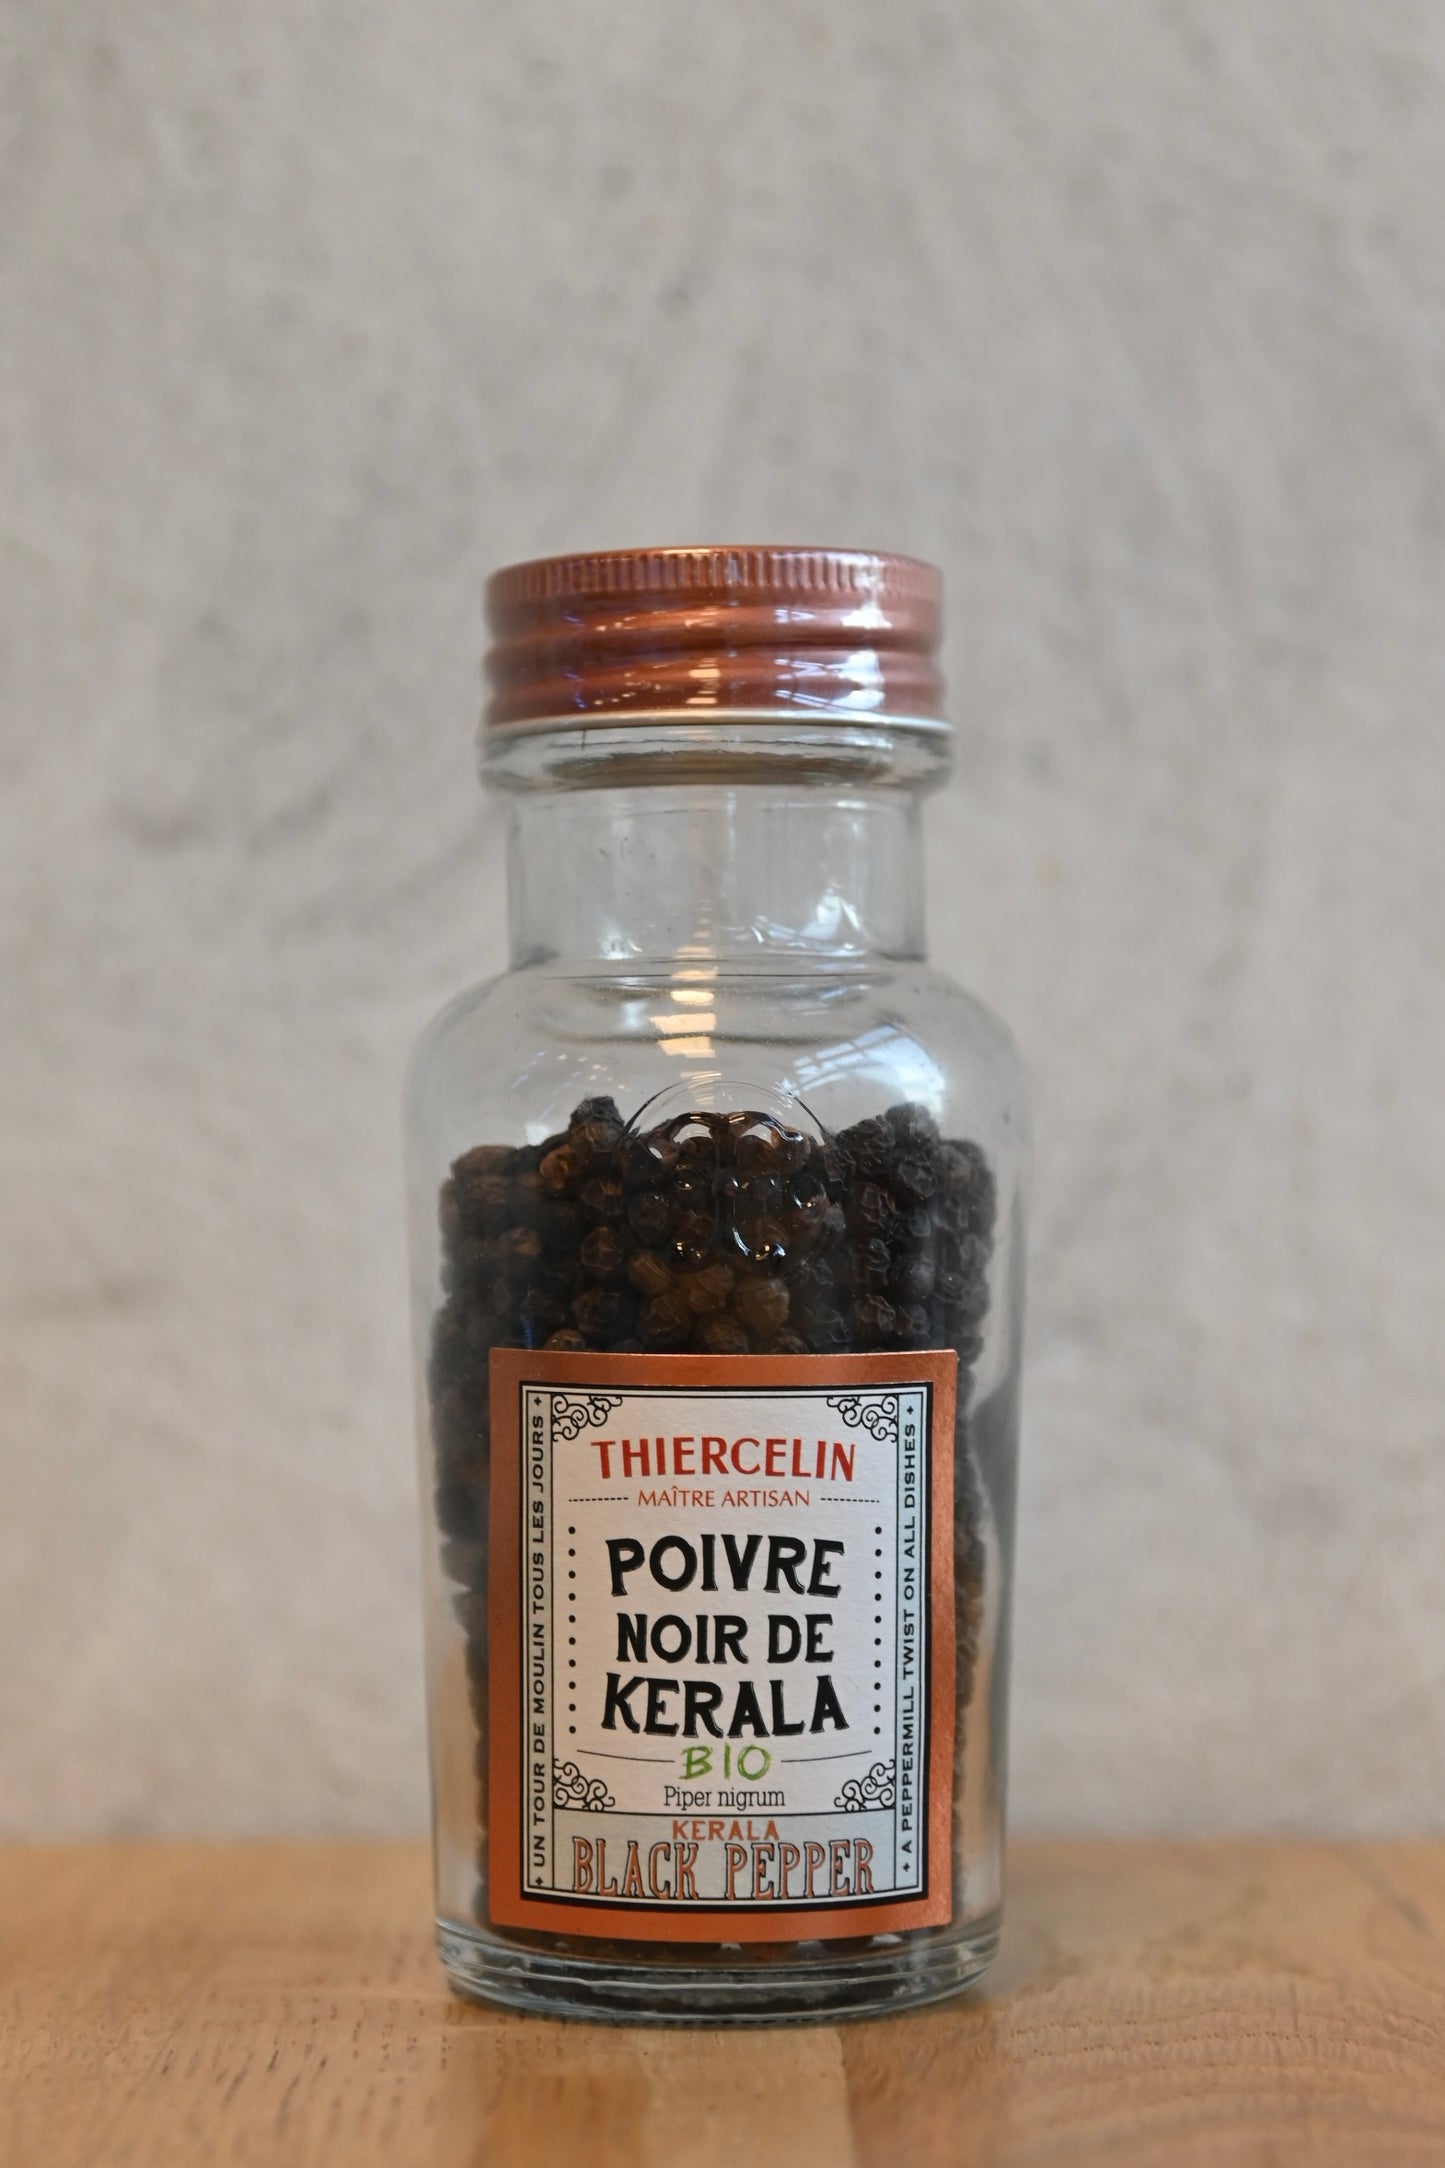 THIERCELIN 1809 Poivre noir de Kerala